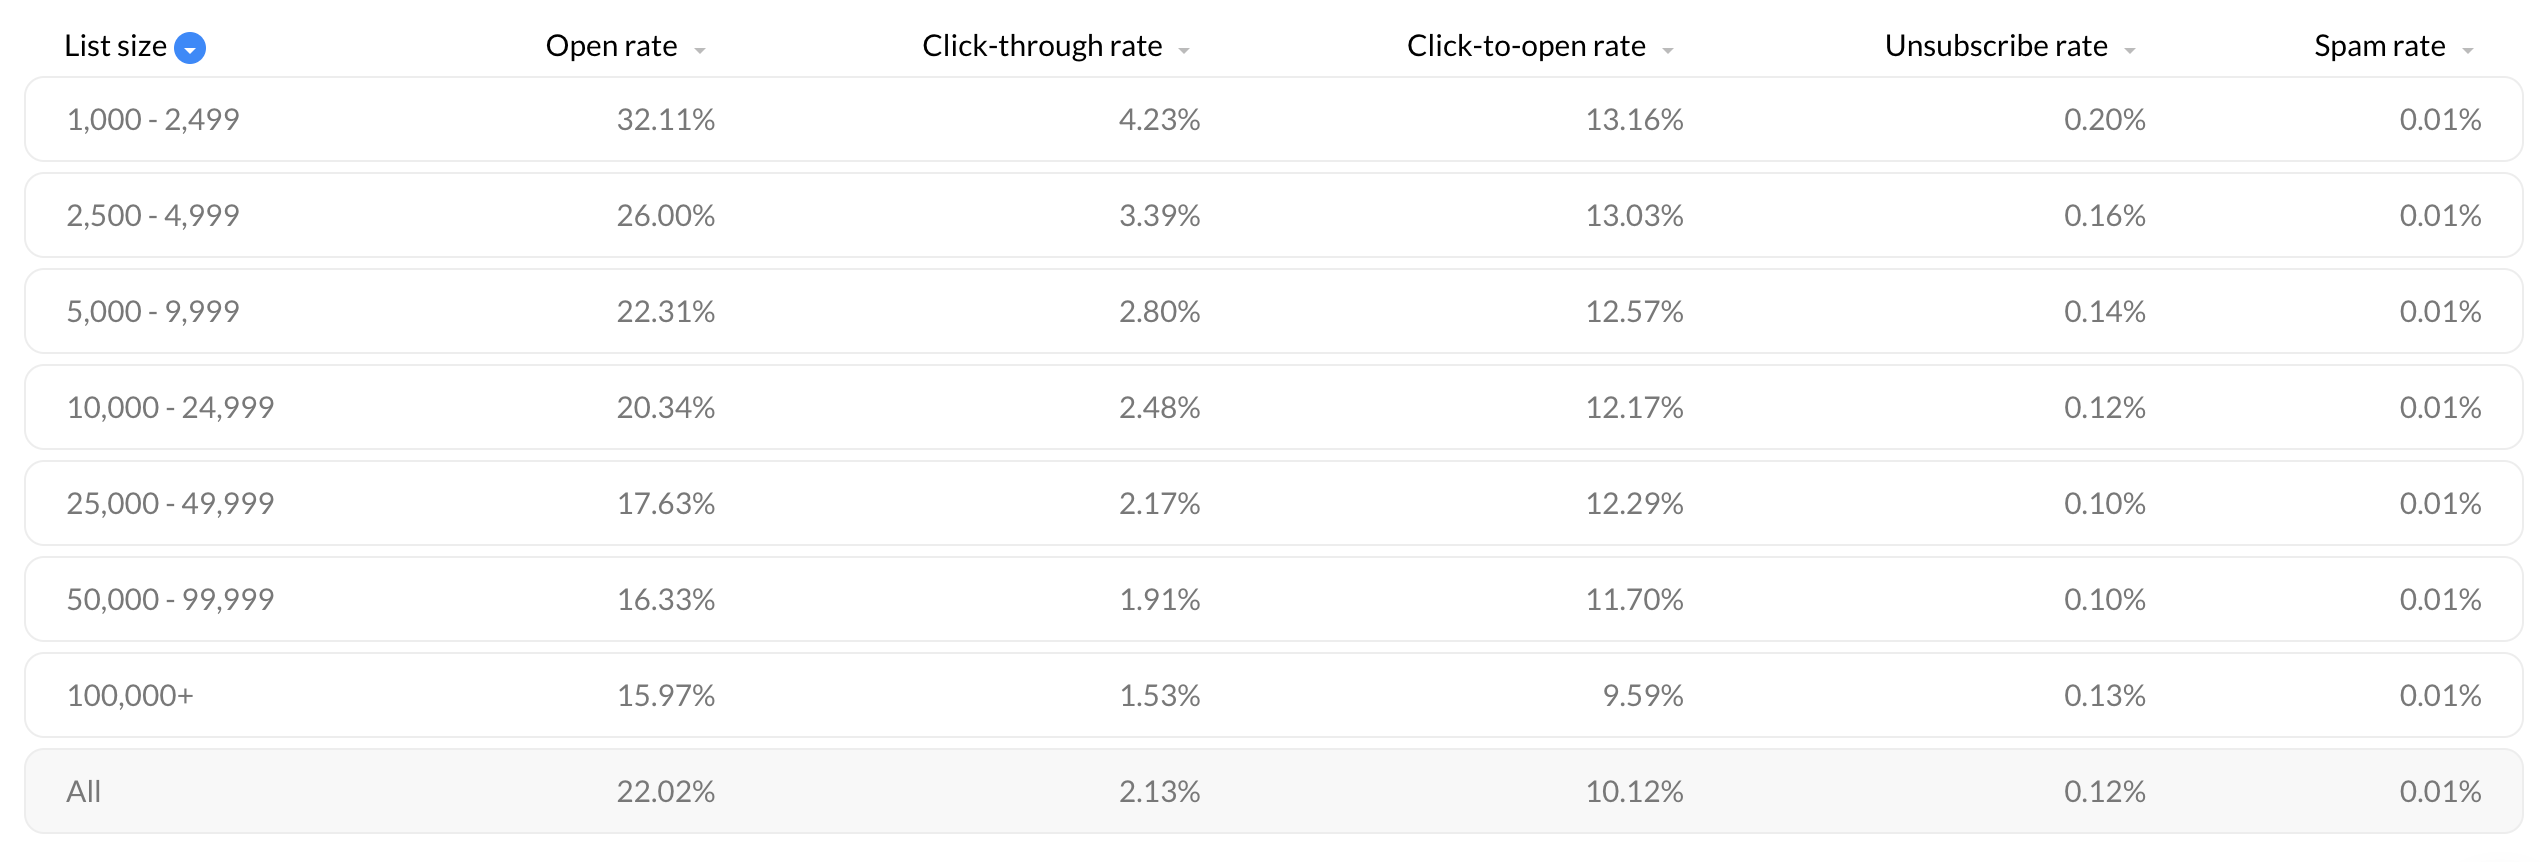 Statistiche sull'e-mail marketing: performance delle campagne in relazione alla dimensione del database.  